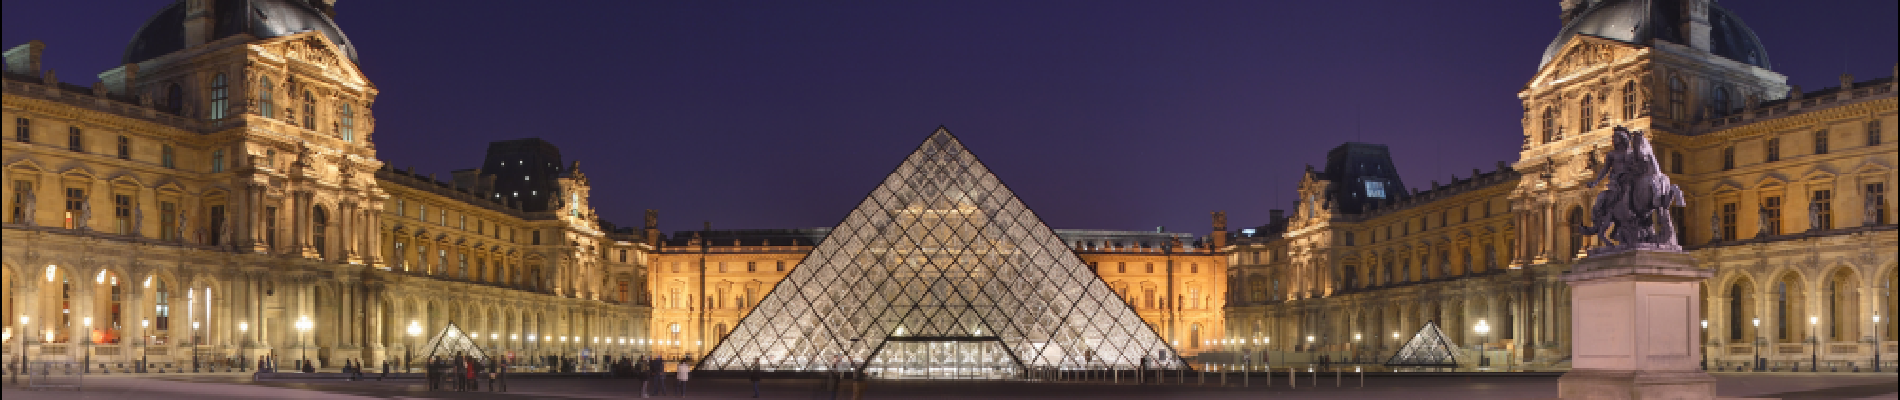 Point d'intérêt Paris - Pyramide du Louvre - Photo